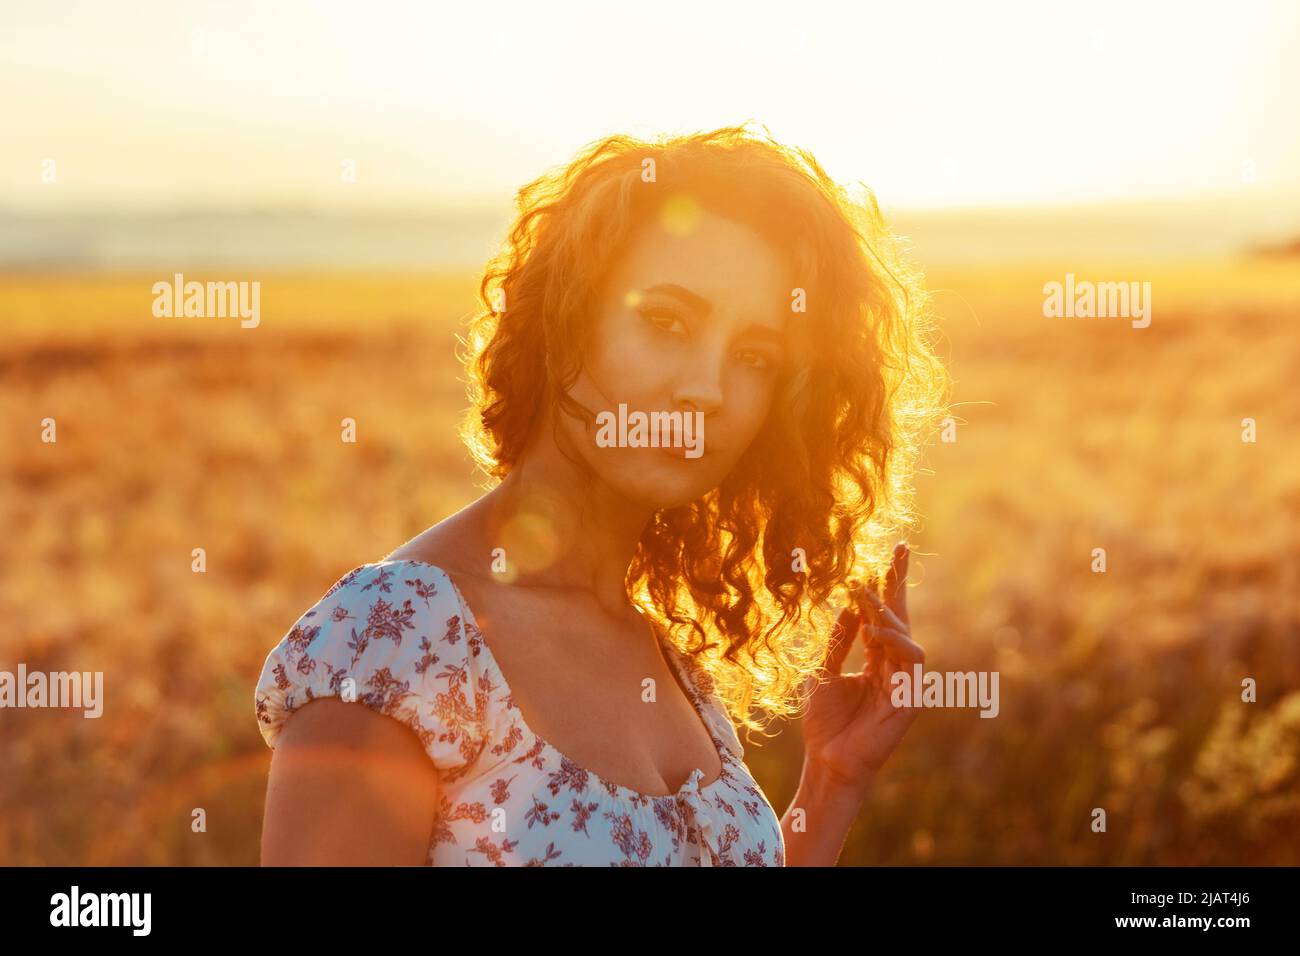 jeune femme marocaine, avec des cheveux bruns, debout dans un champ de blé, tandis que le soleil se pose en arrière-plan et aveuglant la caméra Banque D'Images